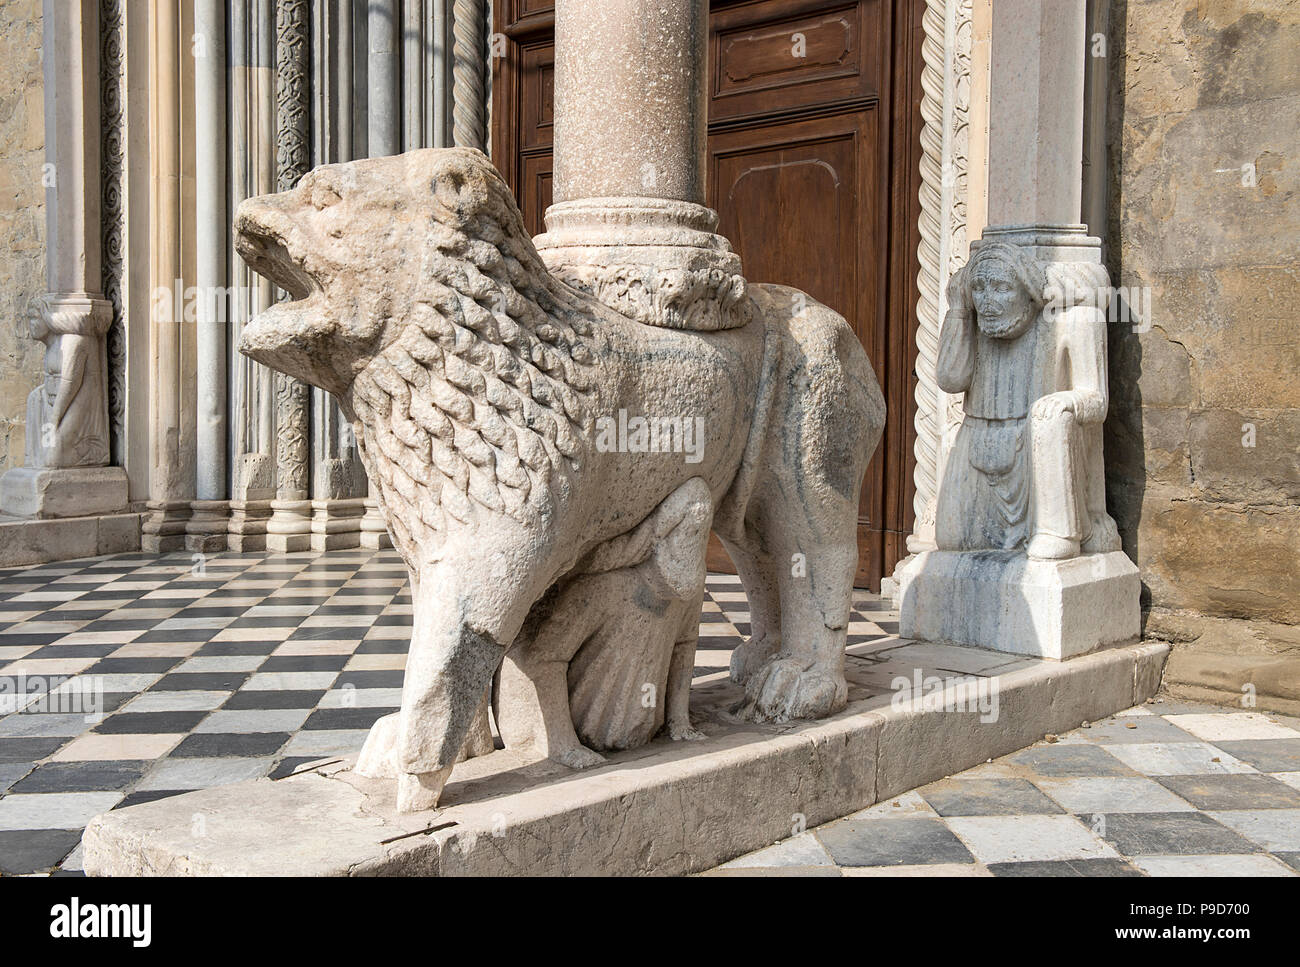 Italy,Lombardy,Bergamo,Città Alta,detail of Santa Maria Maggiore Basilica facade Stock Photo